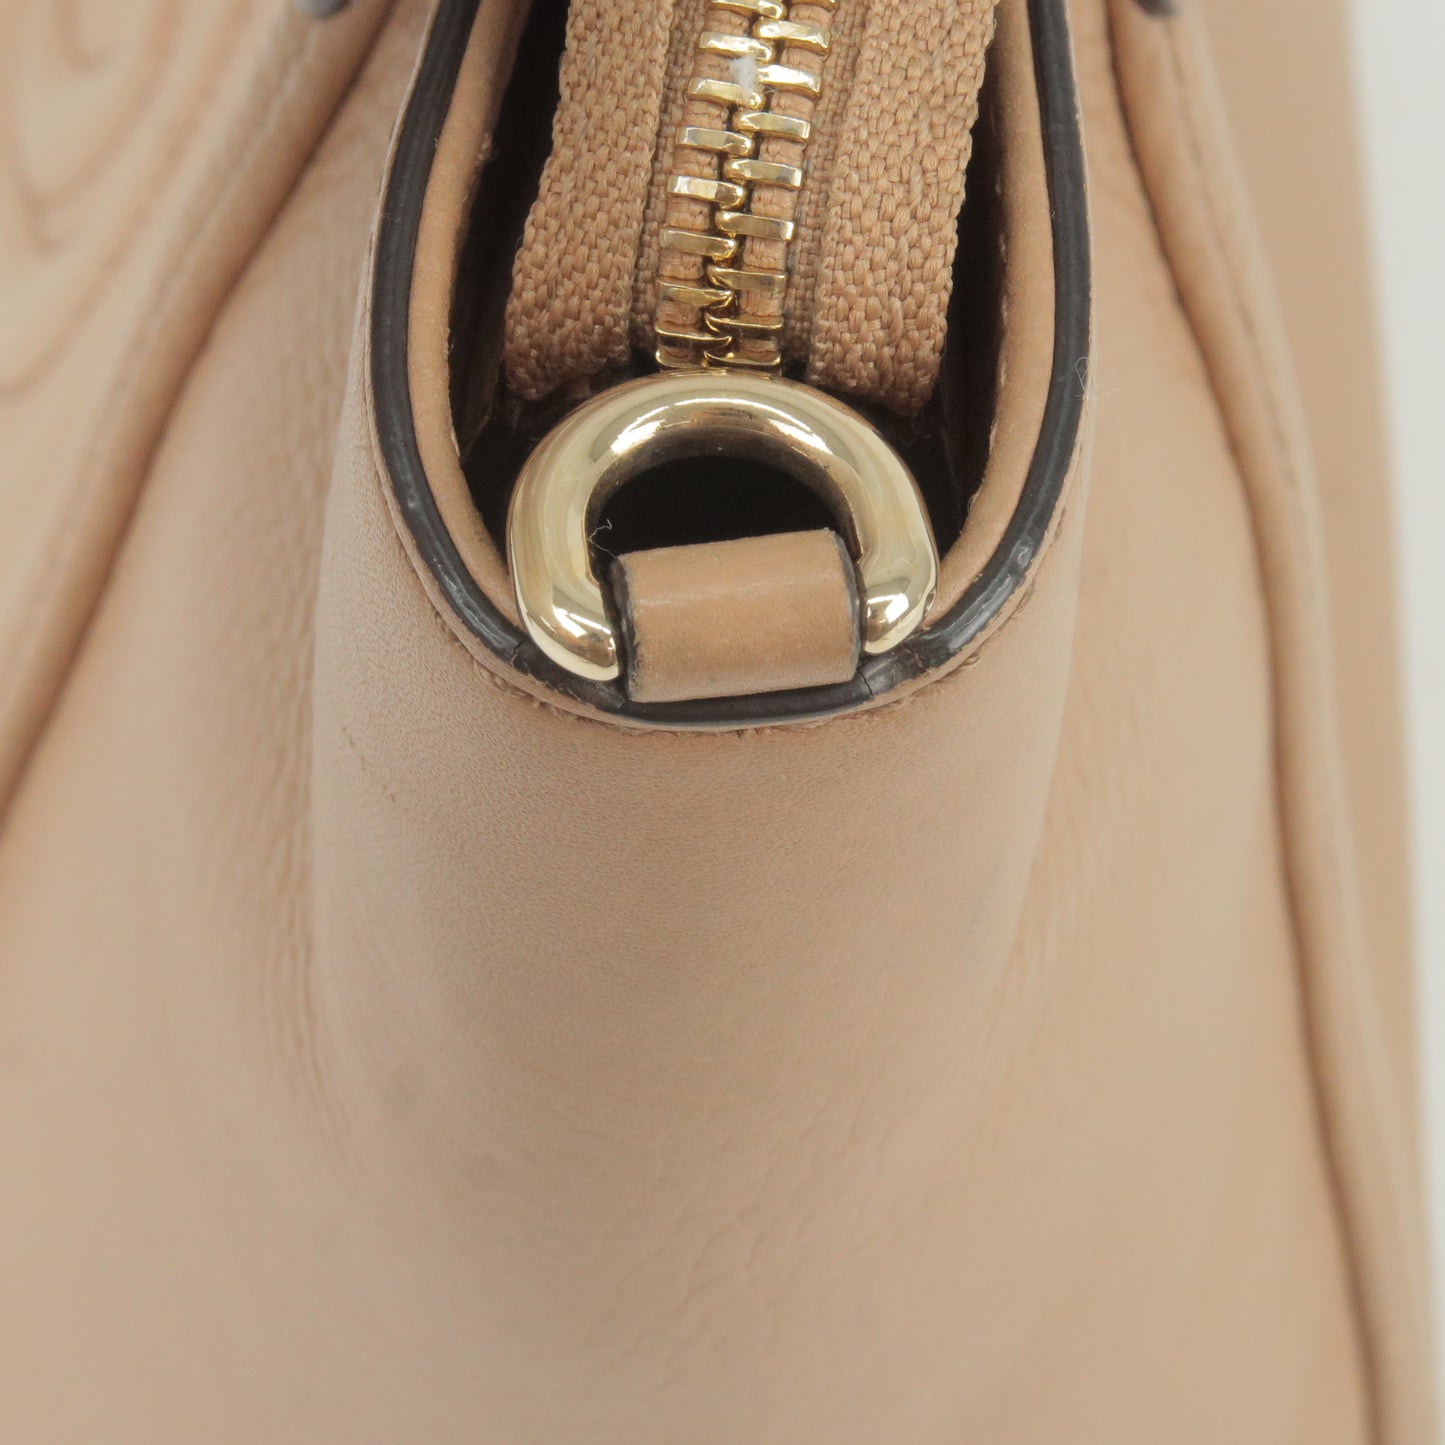 GUCCI SOHO Interlocking GG Leather Shoulder Bag Beige 369176